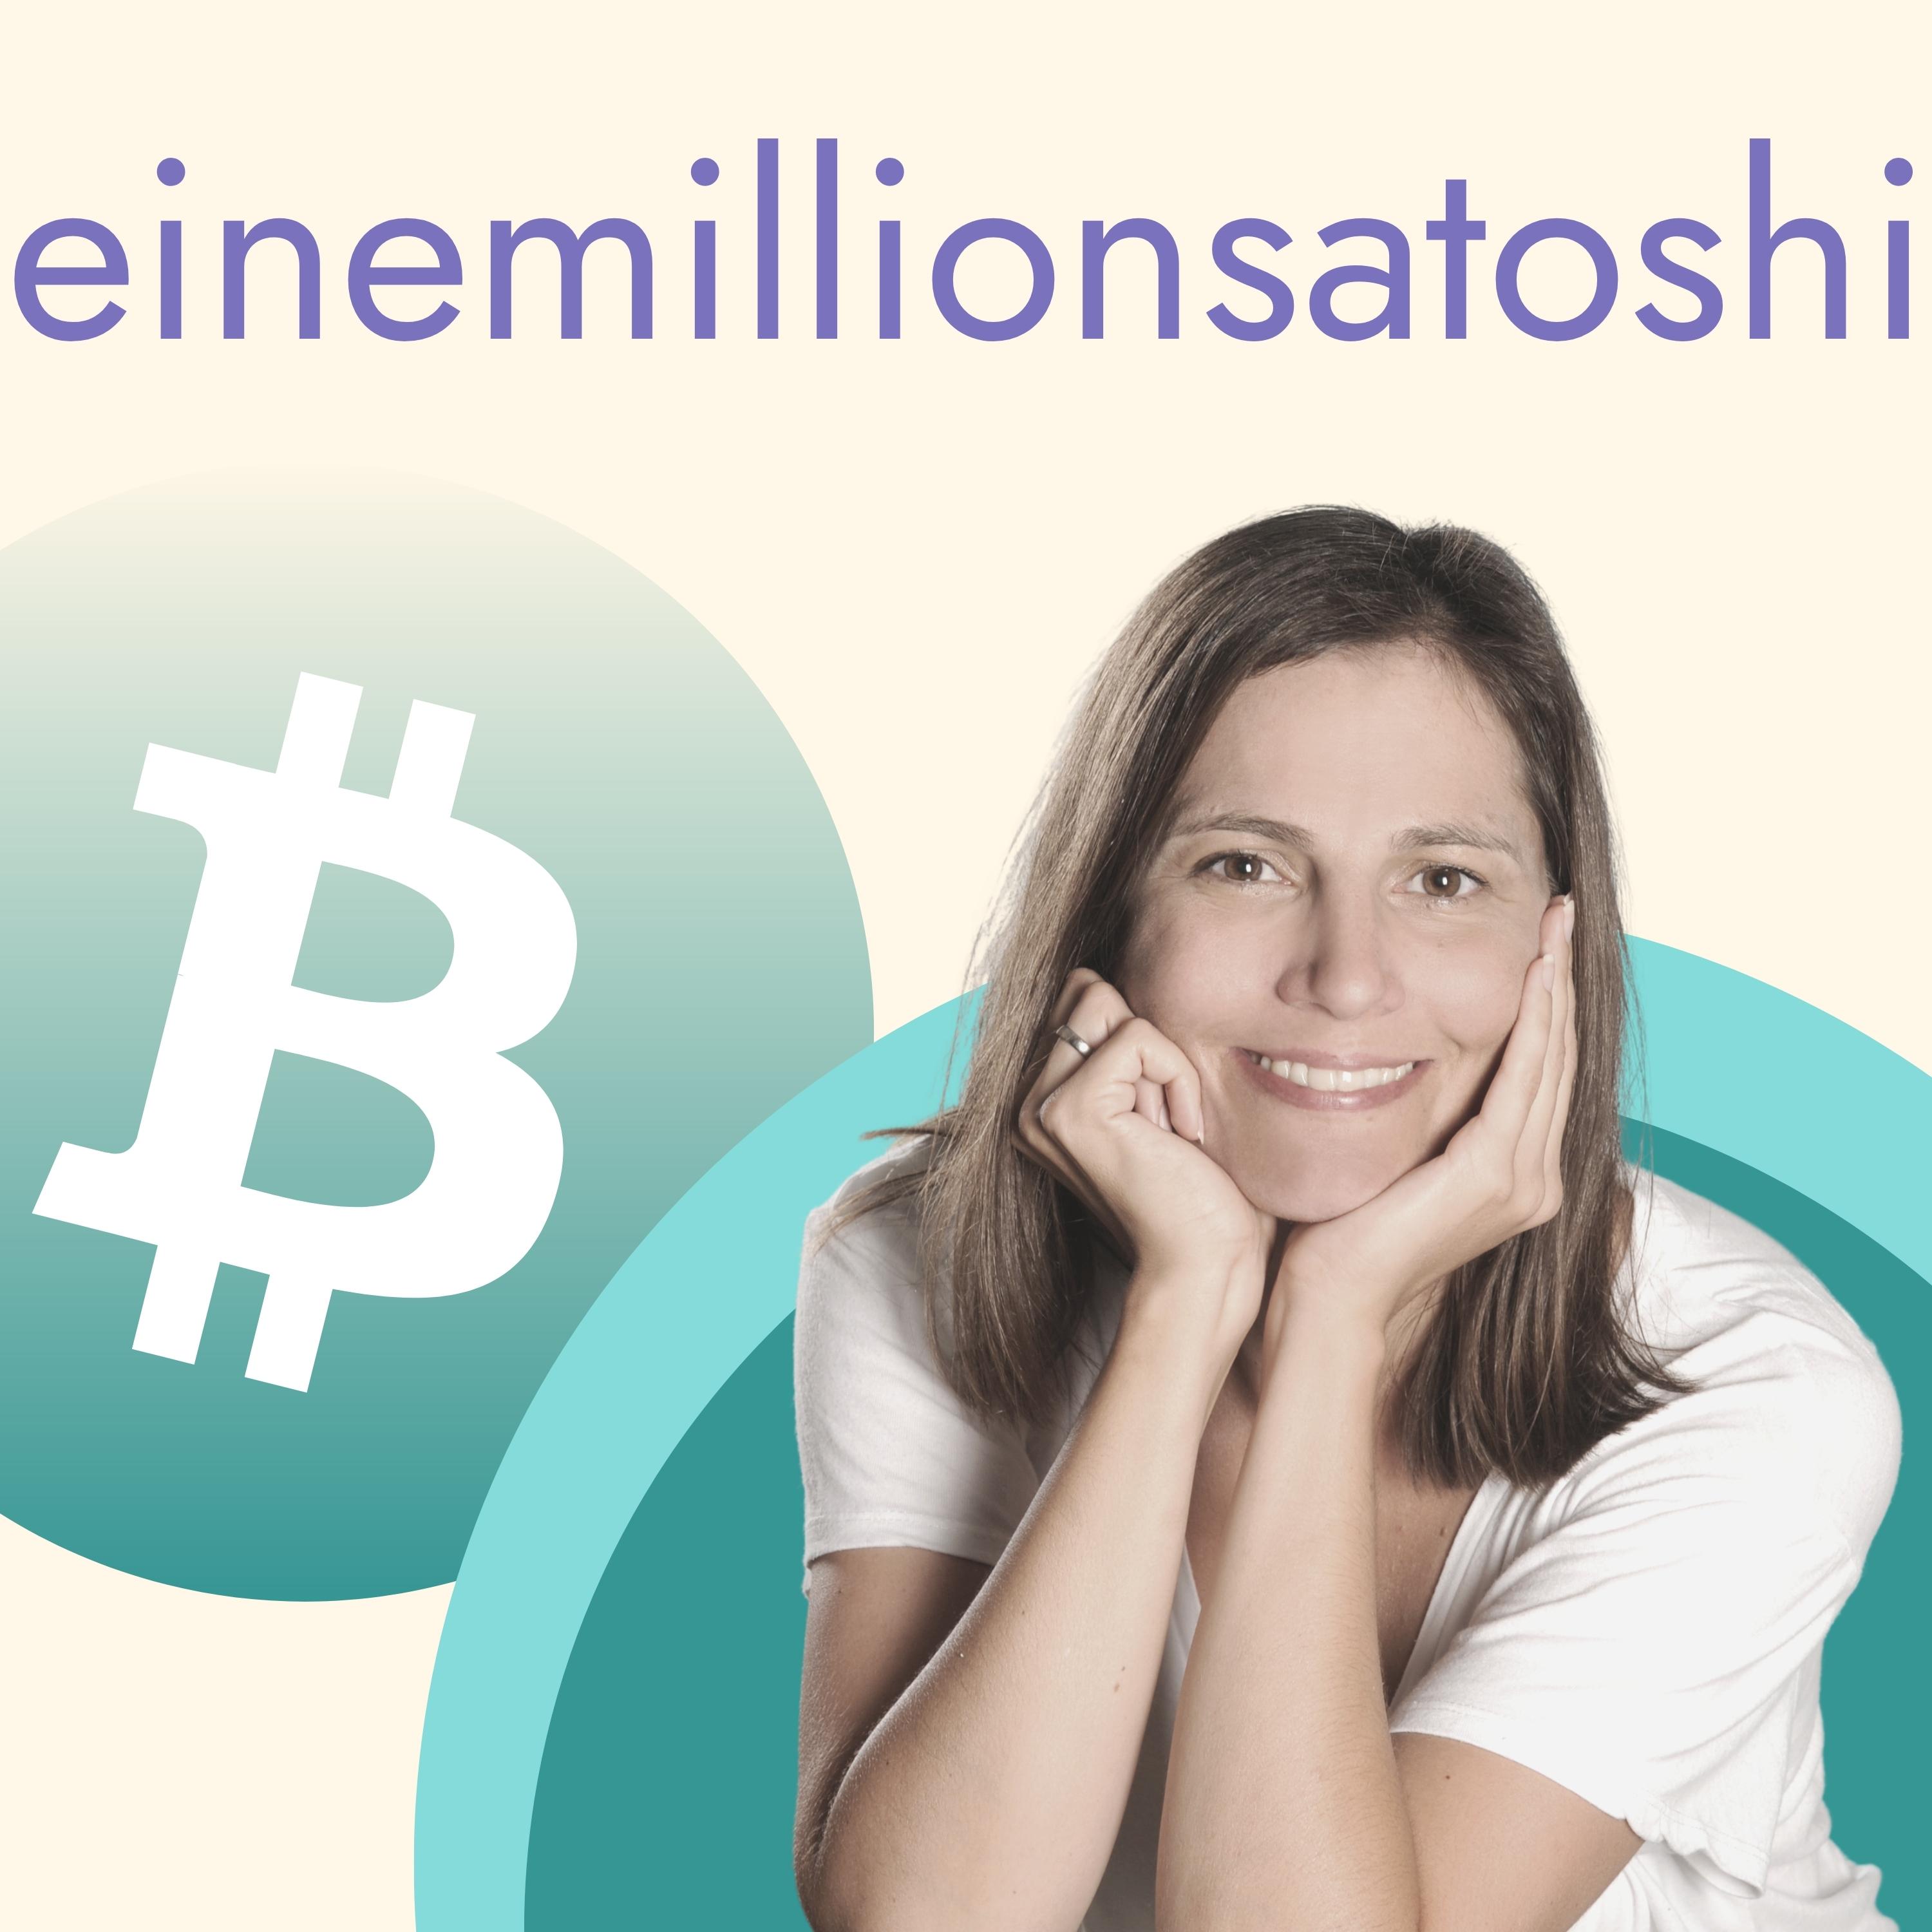 Einemillionsatoshi - der Bitcoin Podcast für Frauen